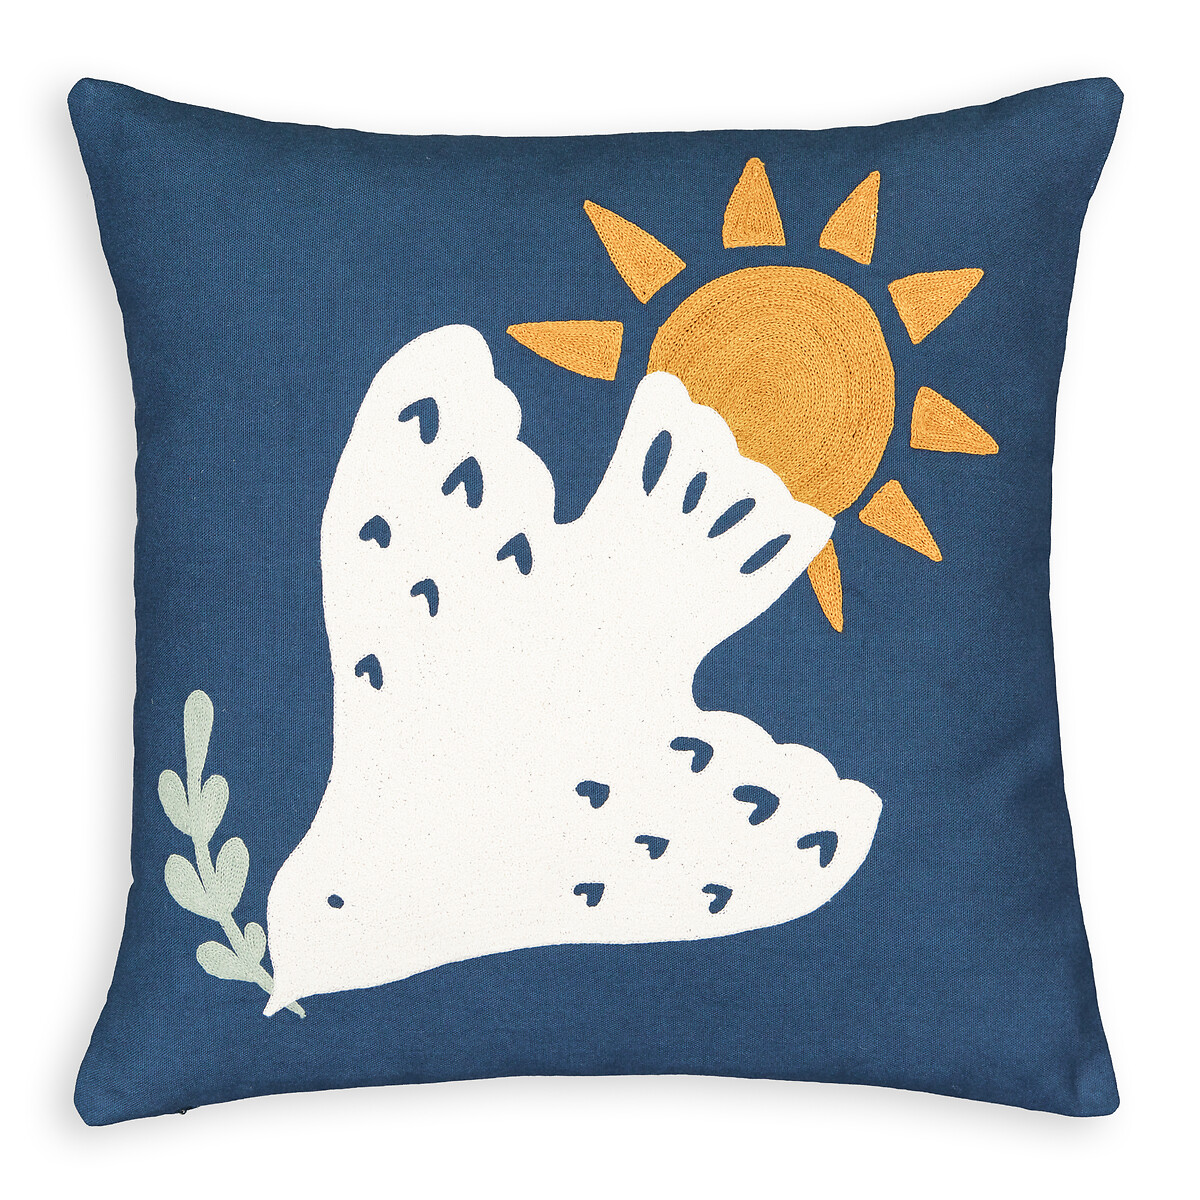 Azur Embroidered Dove 100% Cotton Square Cushion Cover